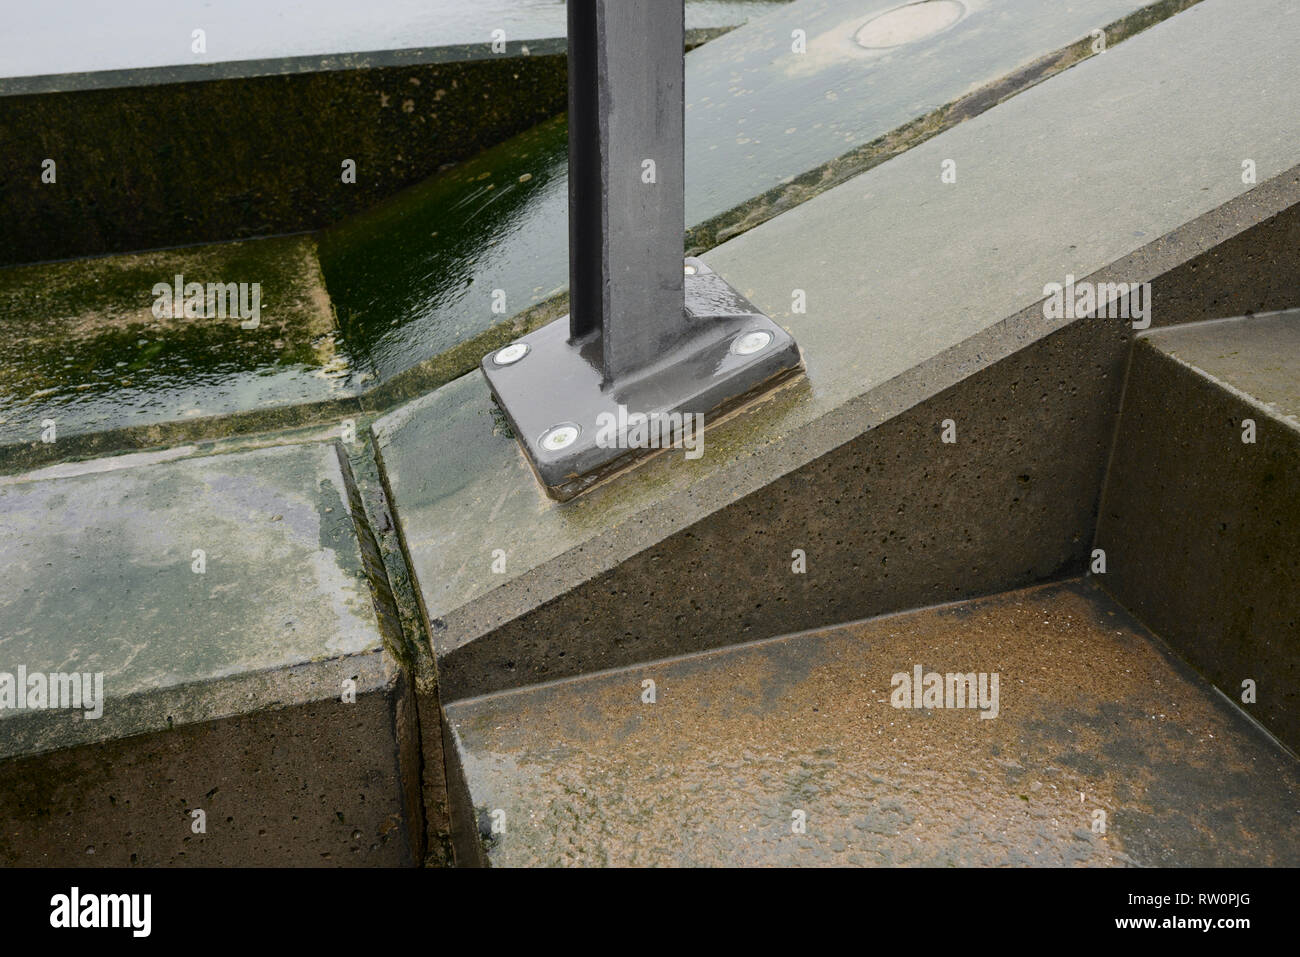 Supporto del corrimano in acciaio resistente alla corrosione imbullonato ad angolo con il calcestruzzo in caso di intemperie ad Anchorsholme, Blackpool, sulla costa di fylde nel lancashire uk Foto Stock